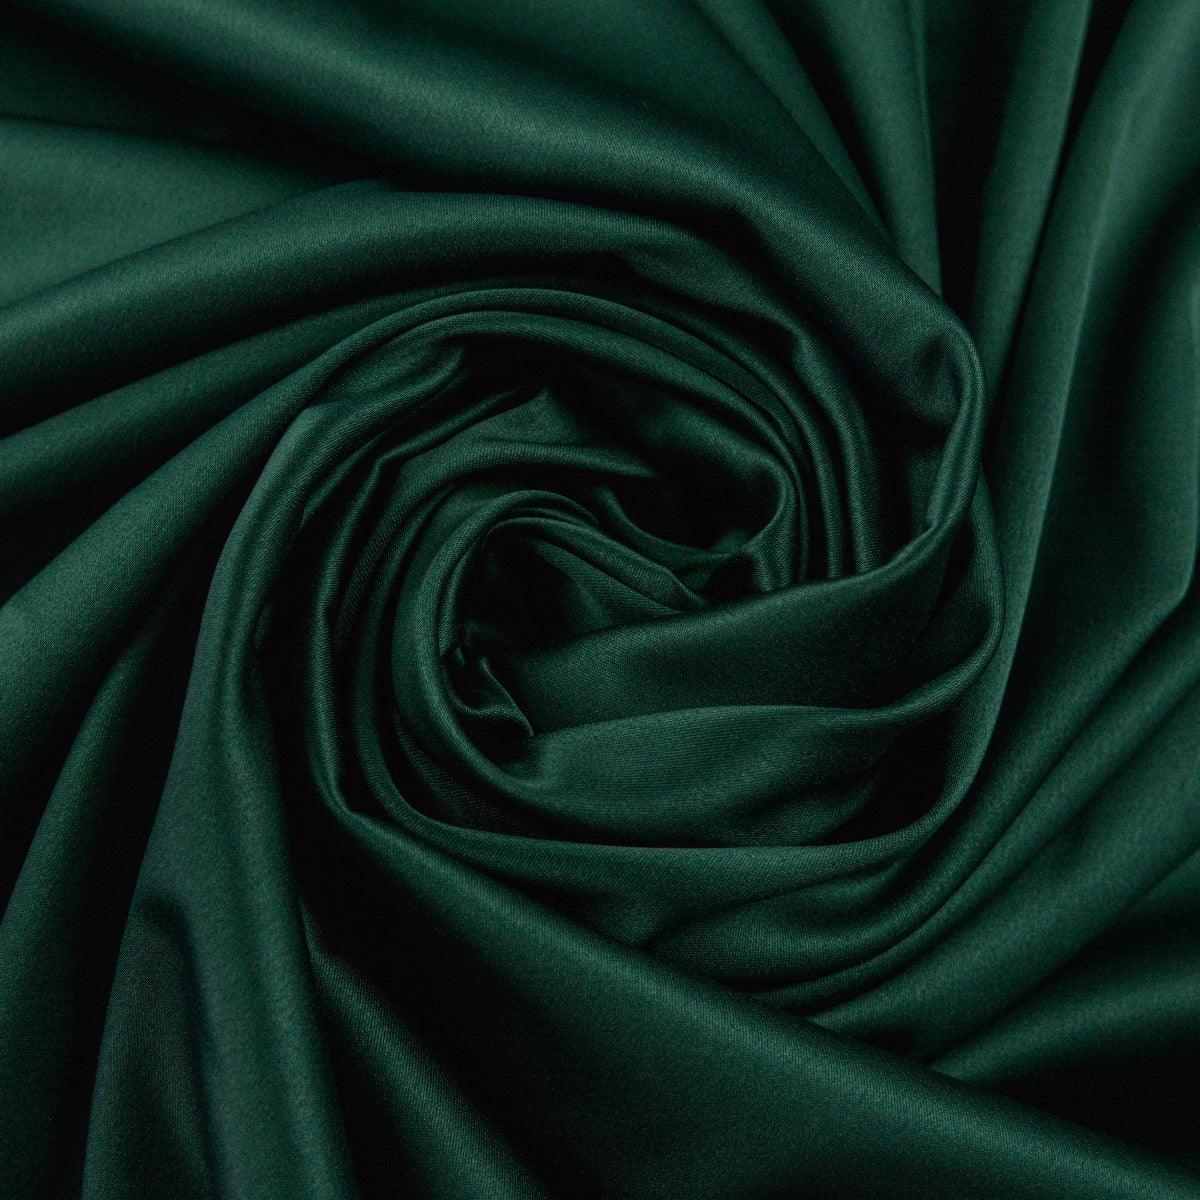 Tafta Elastica -  Verde inchis